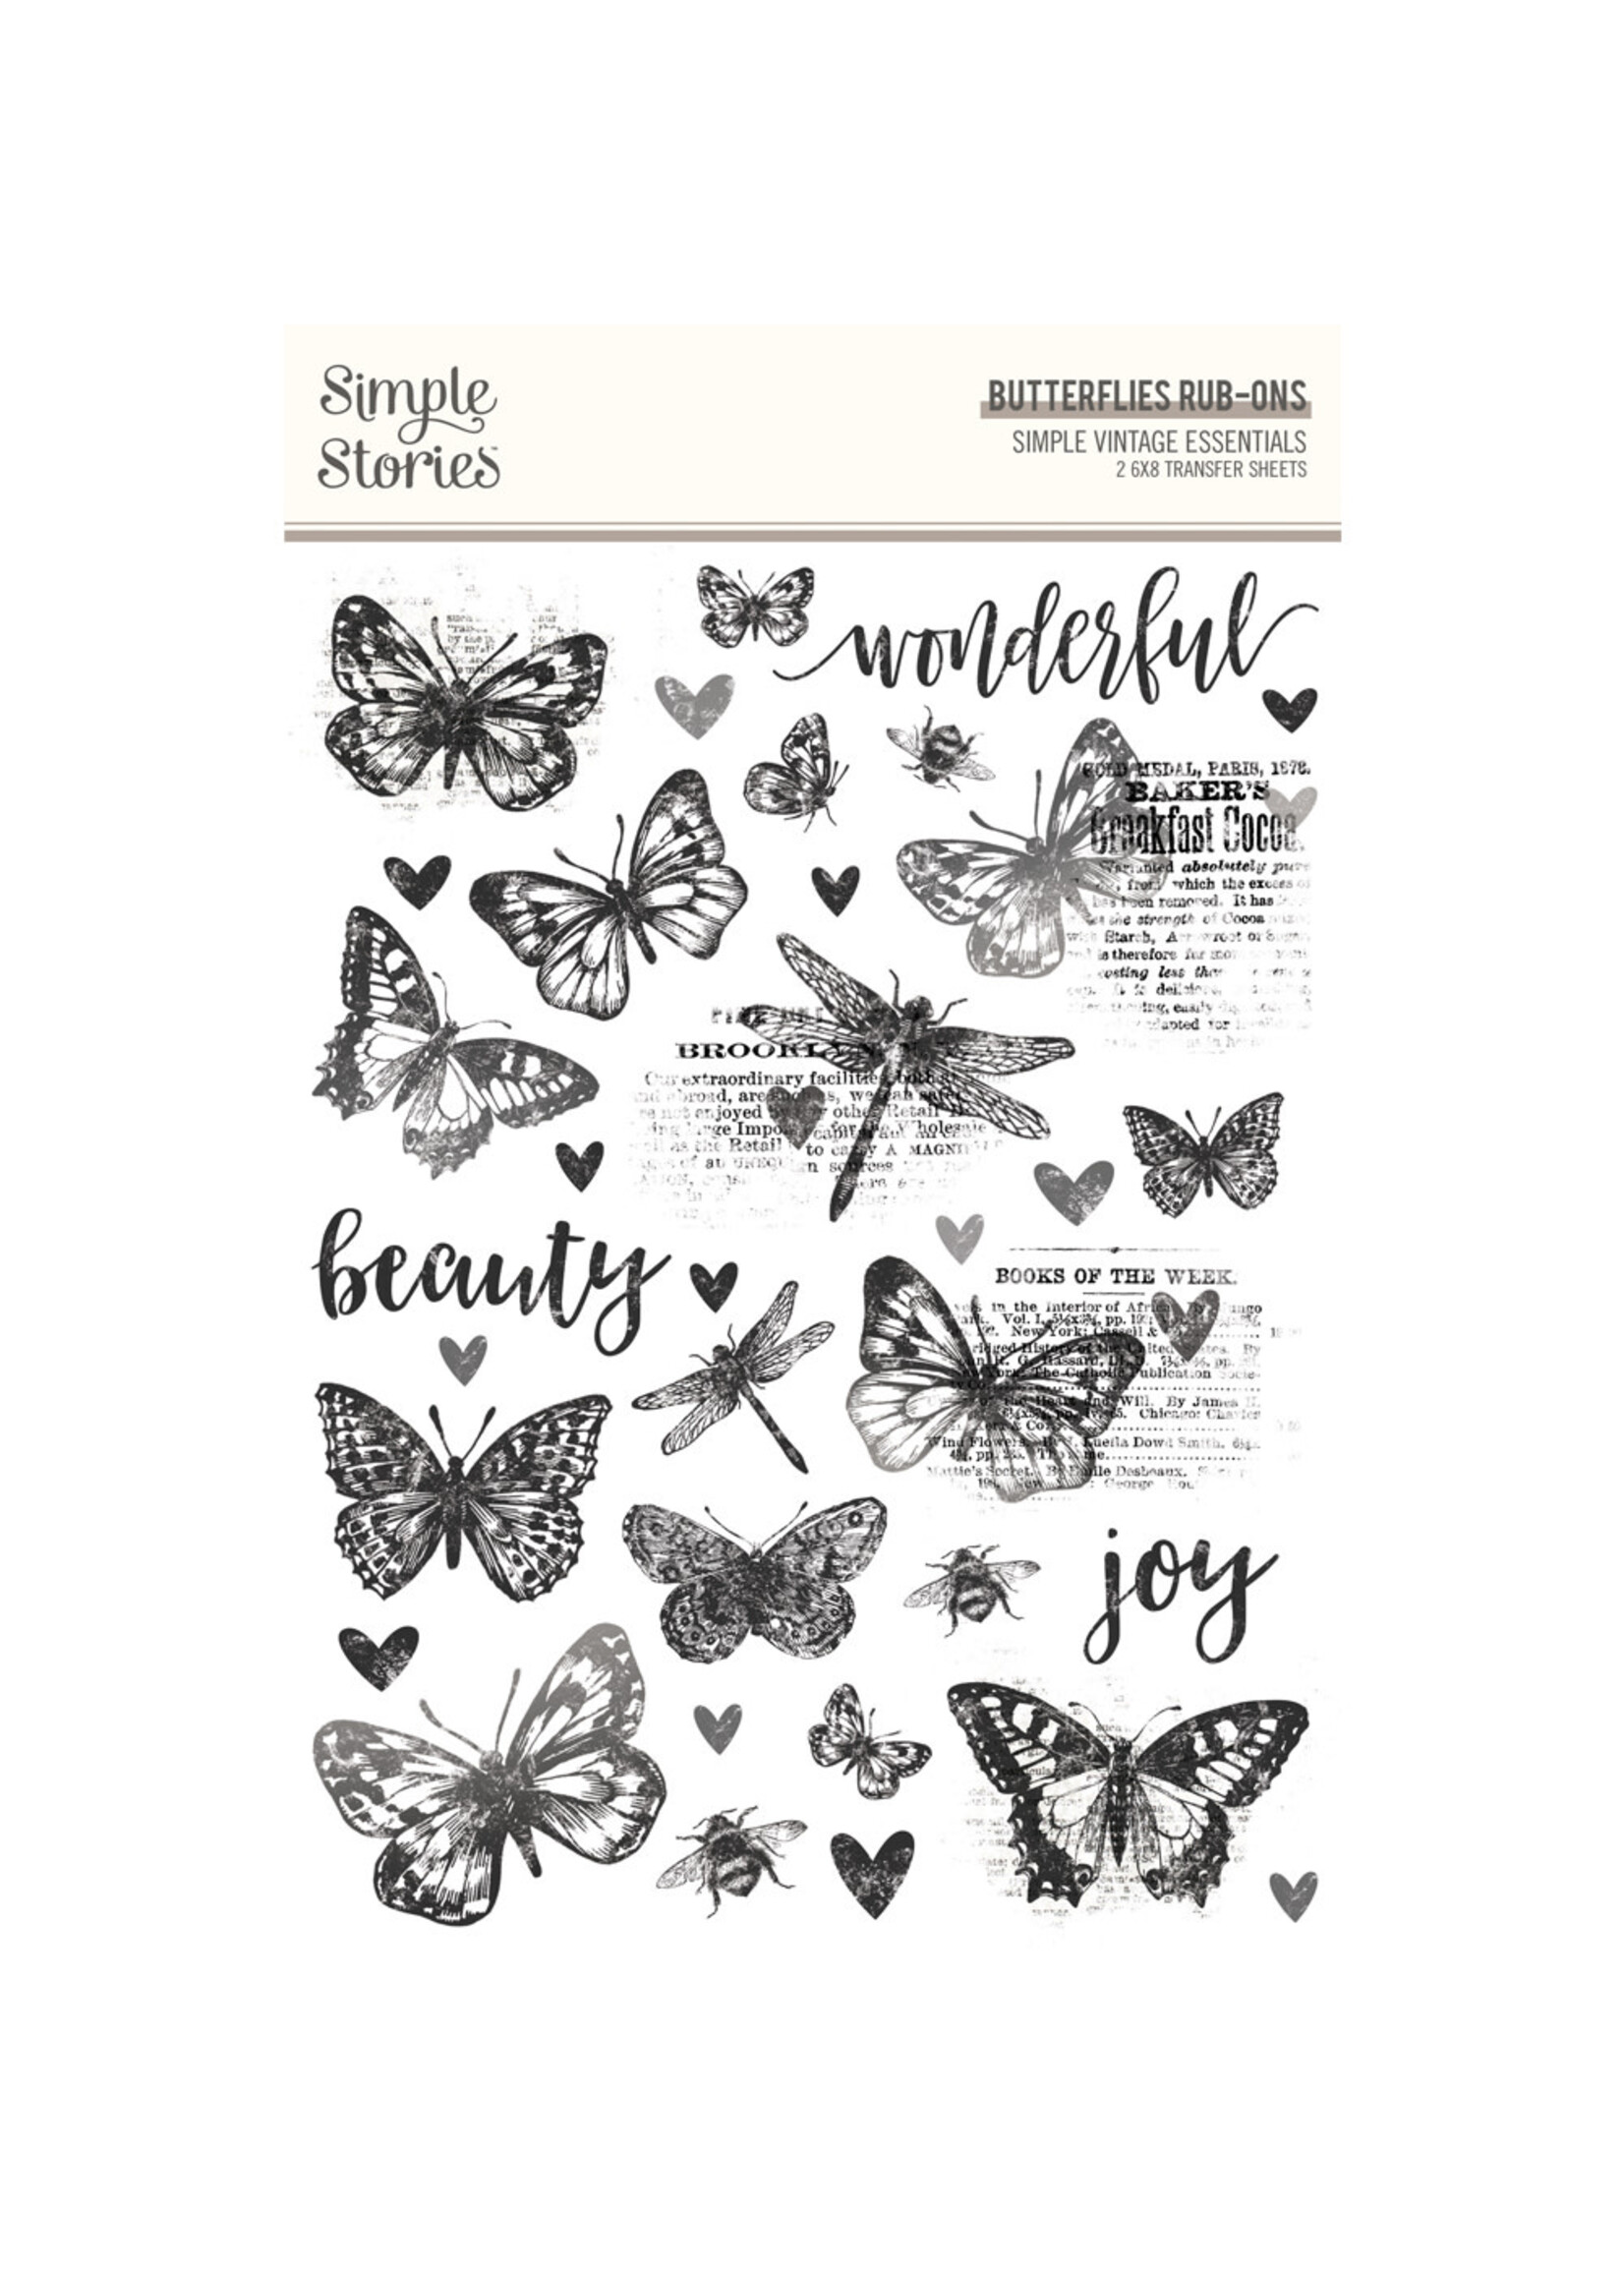 Simple Stories Simple Vintage Essentials  - Rub Ons Butterflies